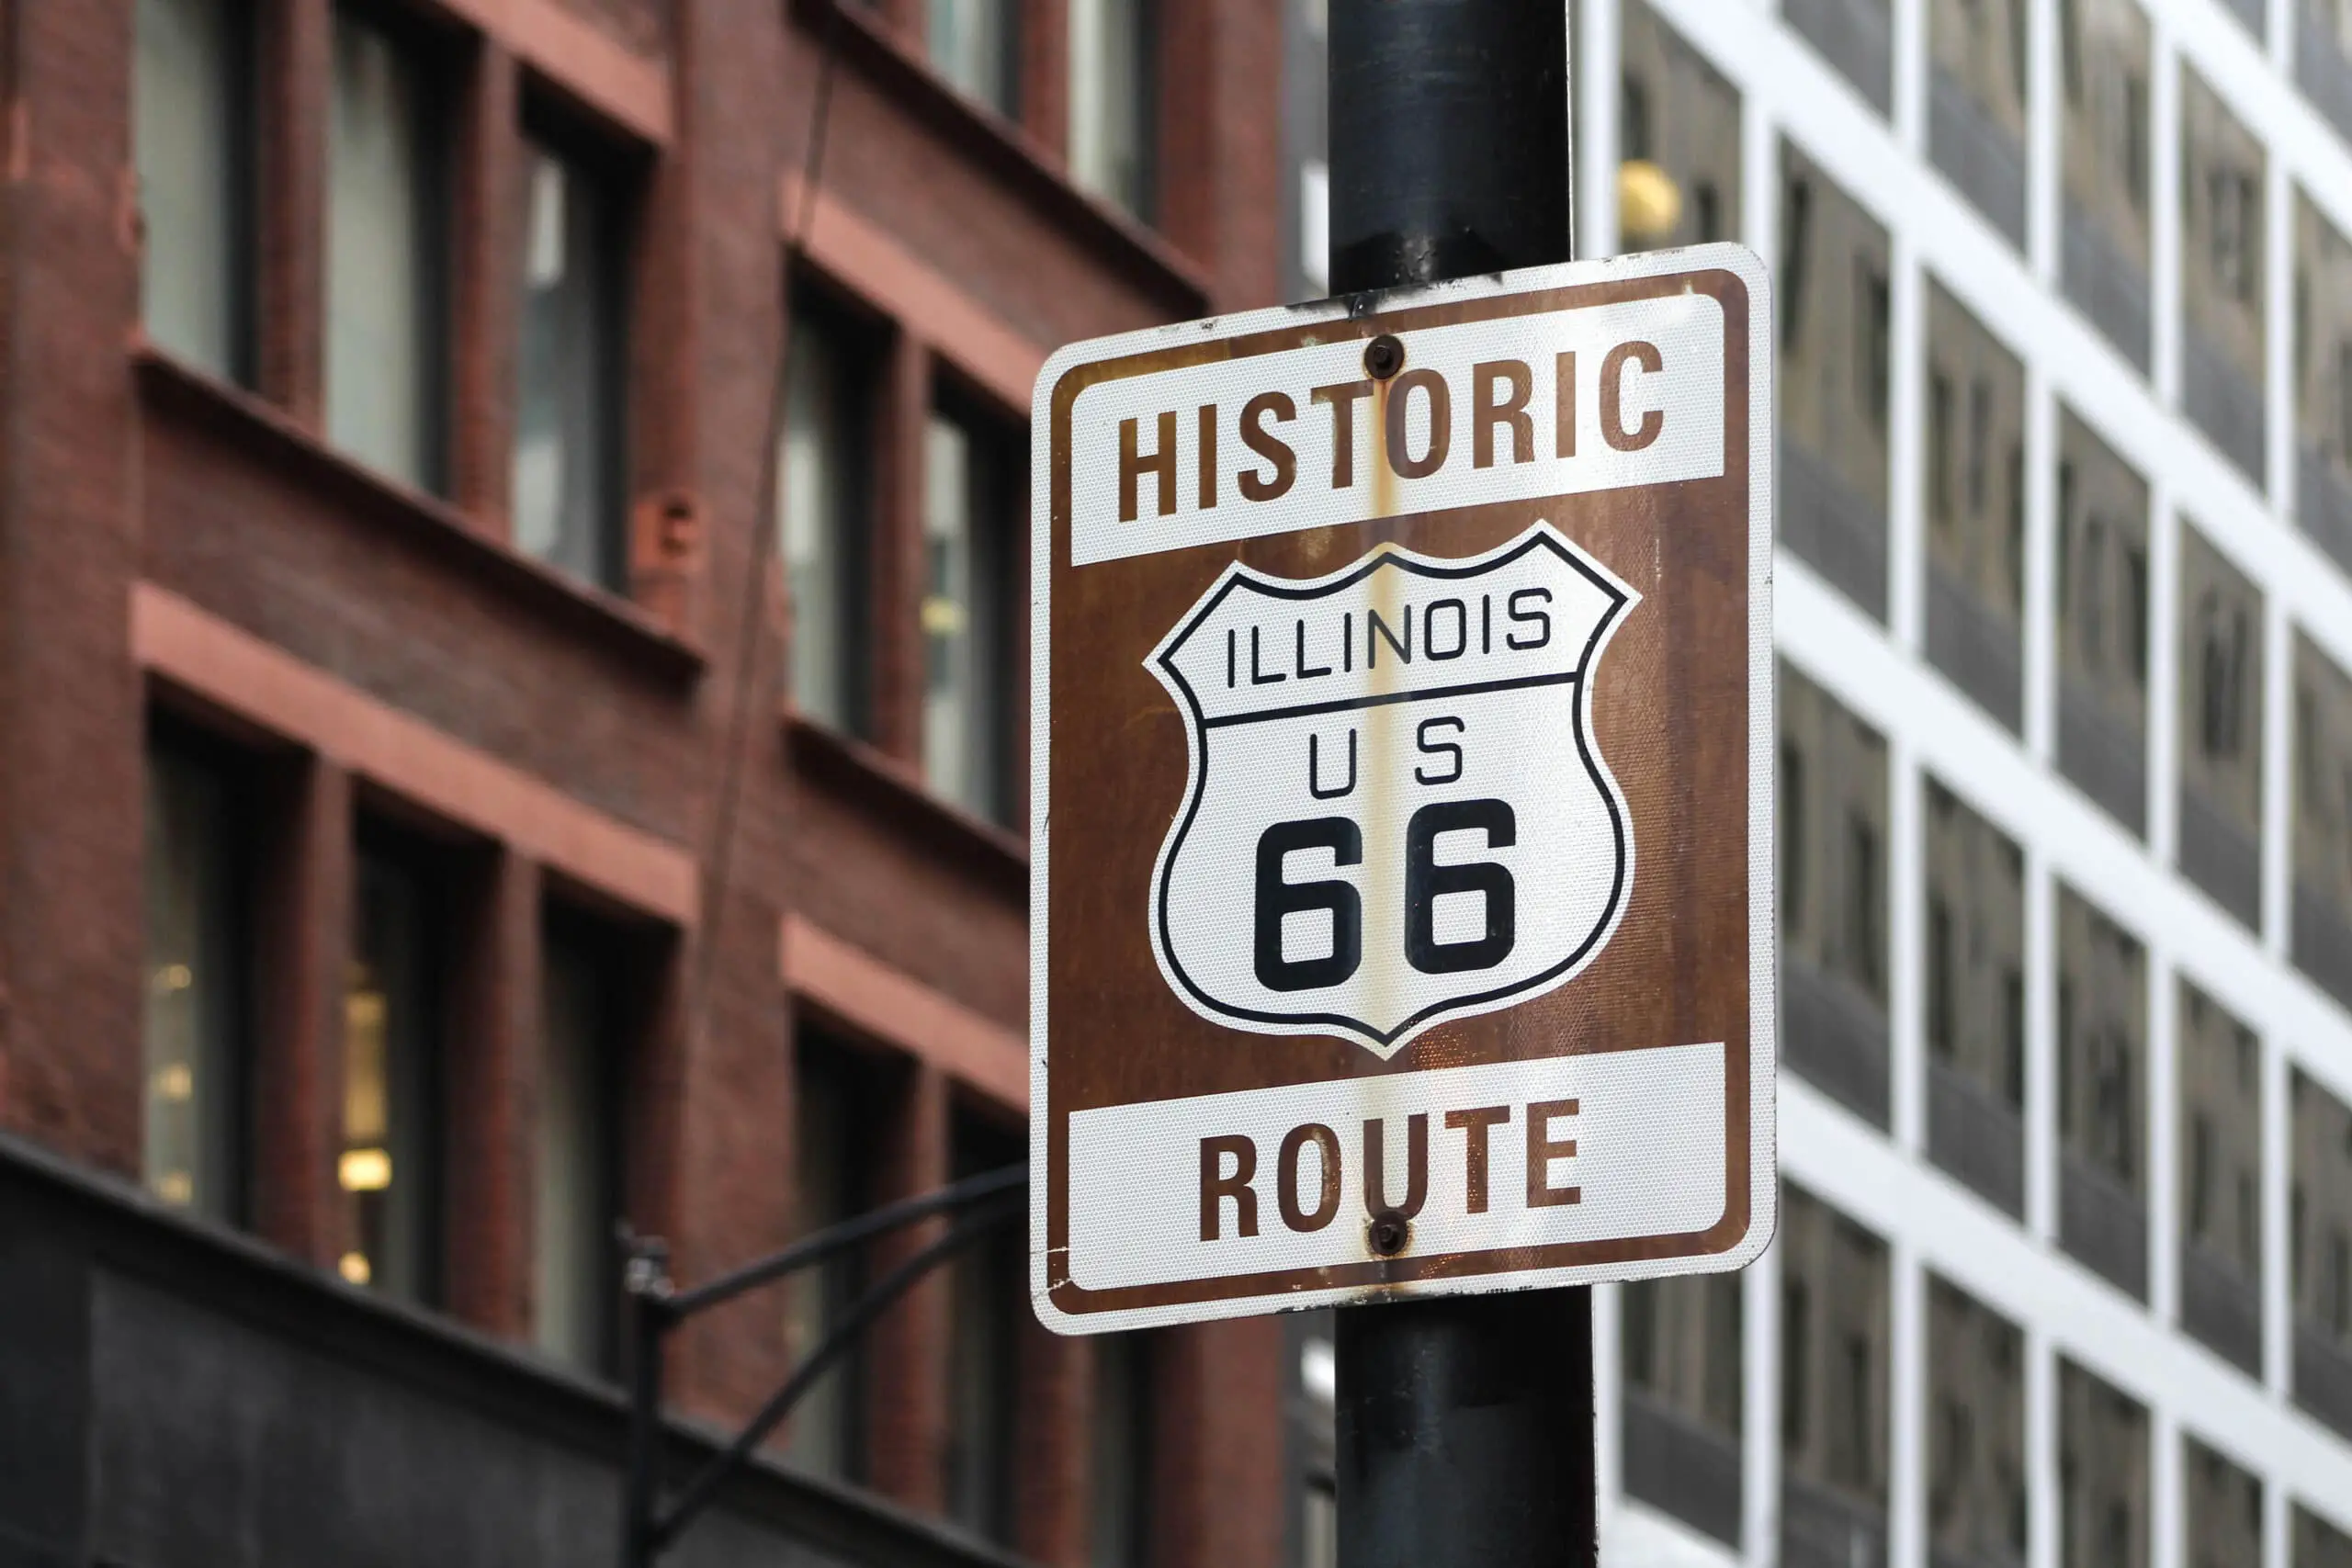 Historic Illinois U.S. 66 Sign